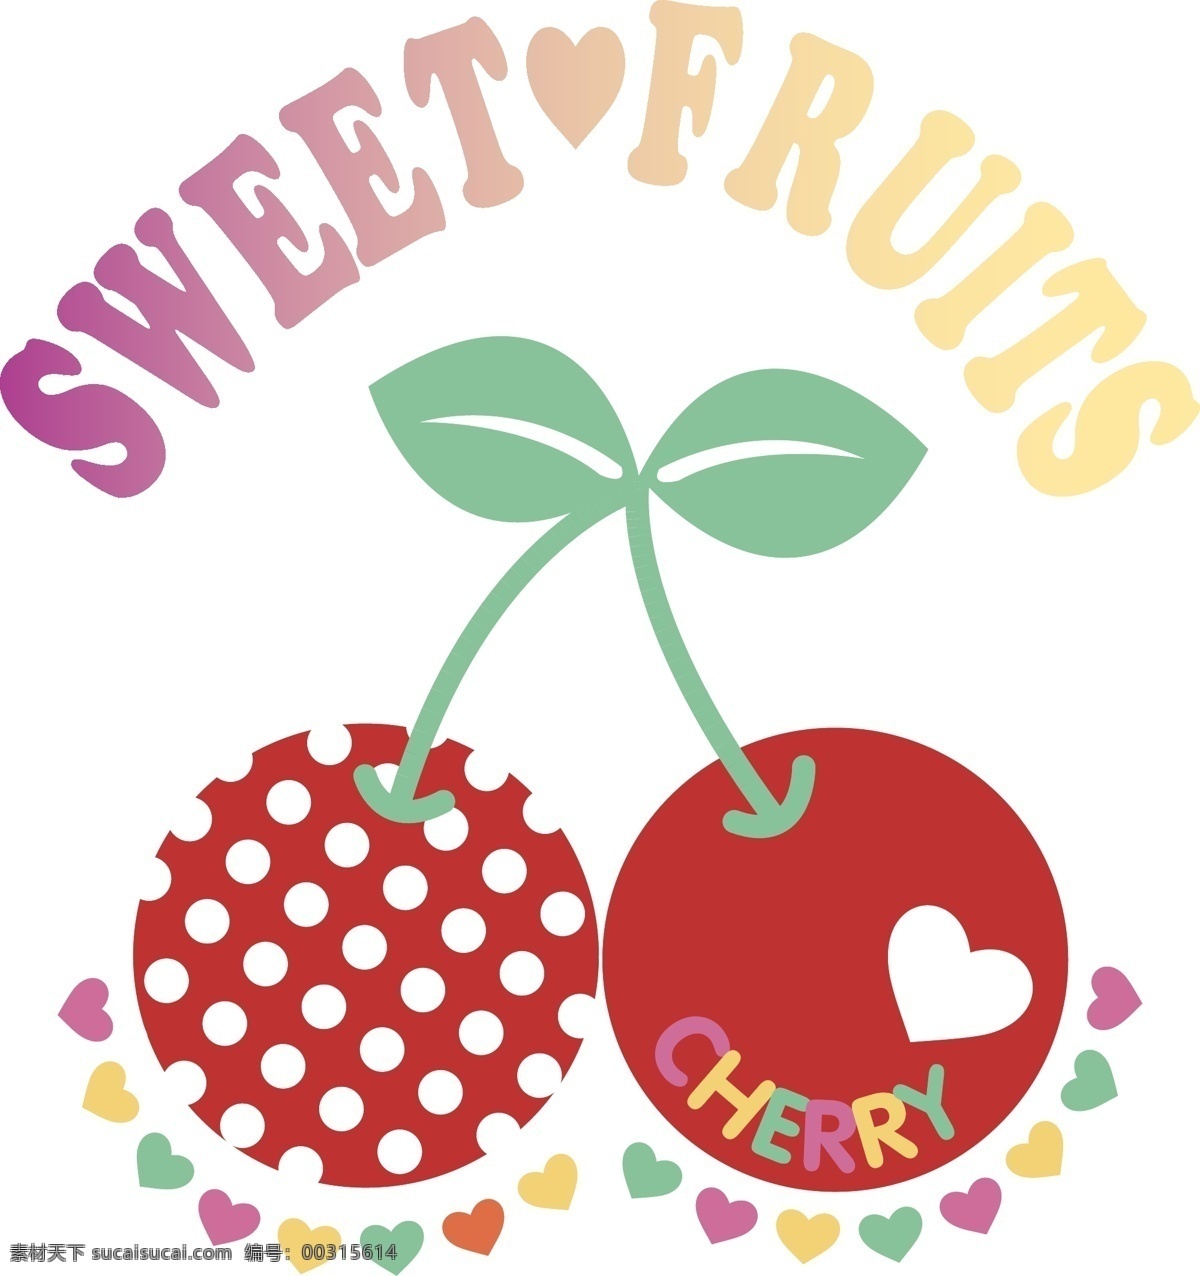 樱桃矢量图 水果矢量 零食素材 卡通水果 食品素材